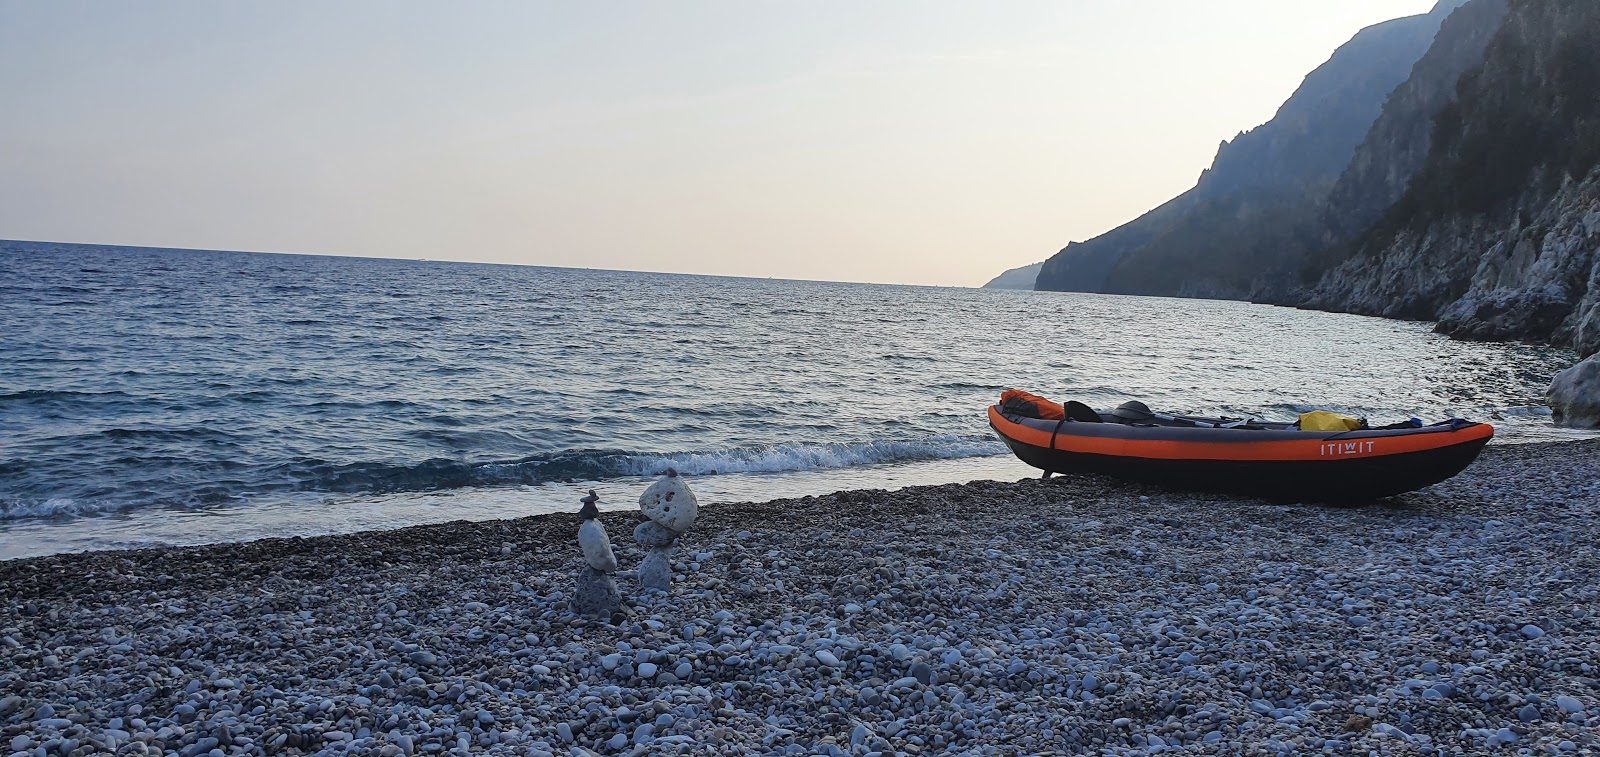 Pianoro di Ciolandrea beach'in fotoğrafı gri çakıl taşı yüzey ile